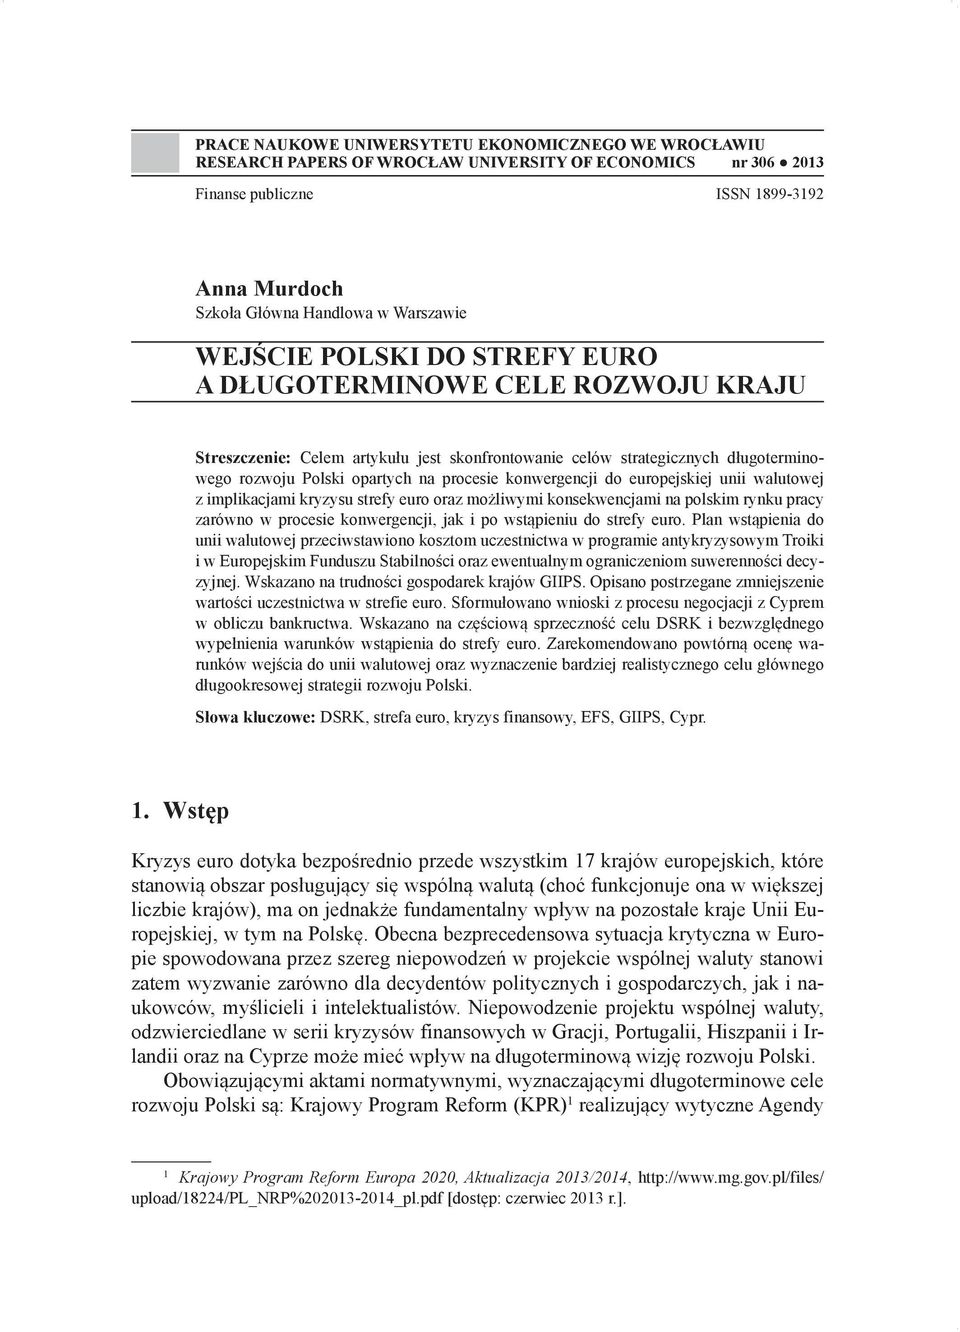 konwergencji do europejskiej unii walutowej z implikacjami kryzysu strefy euro oraz możliwymi konsekwencjami na polskim rynku pracy zarówno w procesie konwergencji, jak i po wstąpieniu do strefy euro.